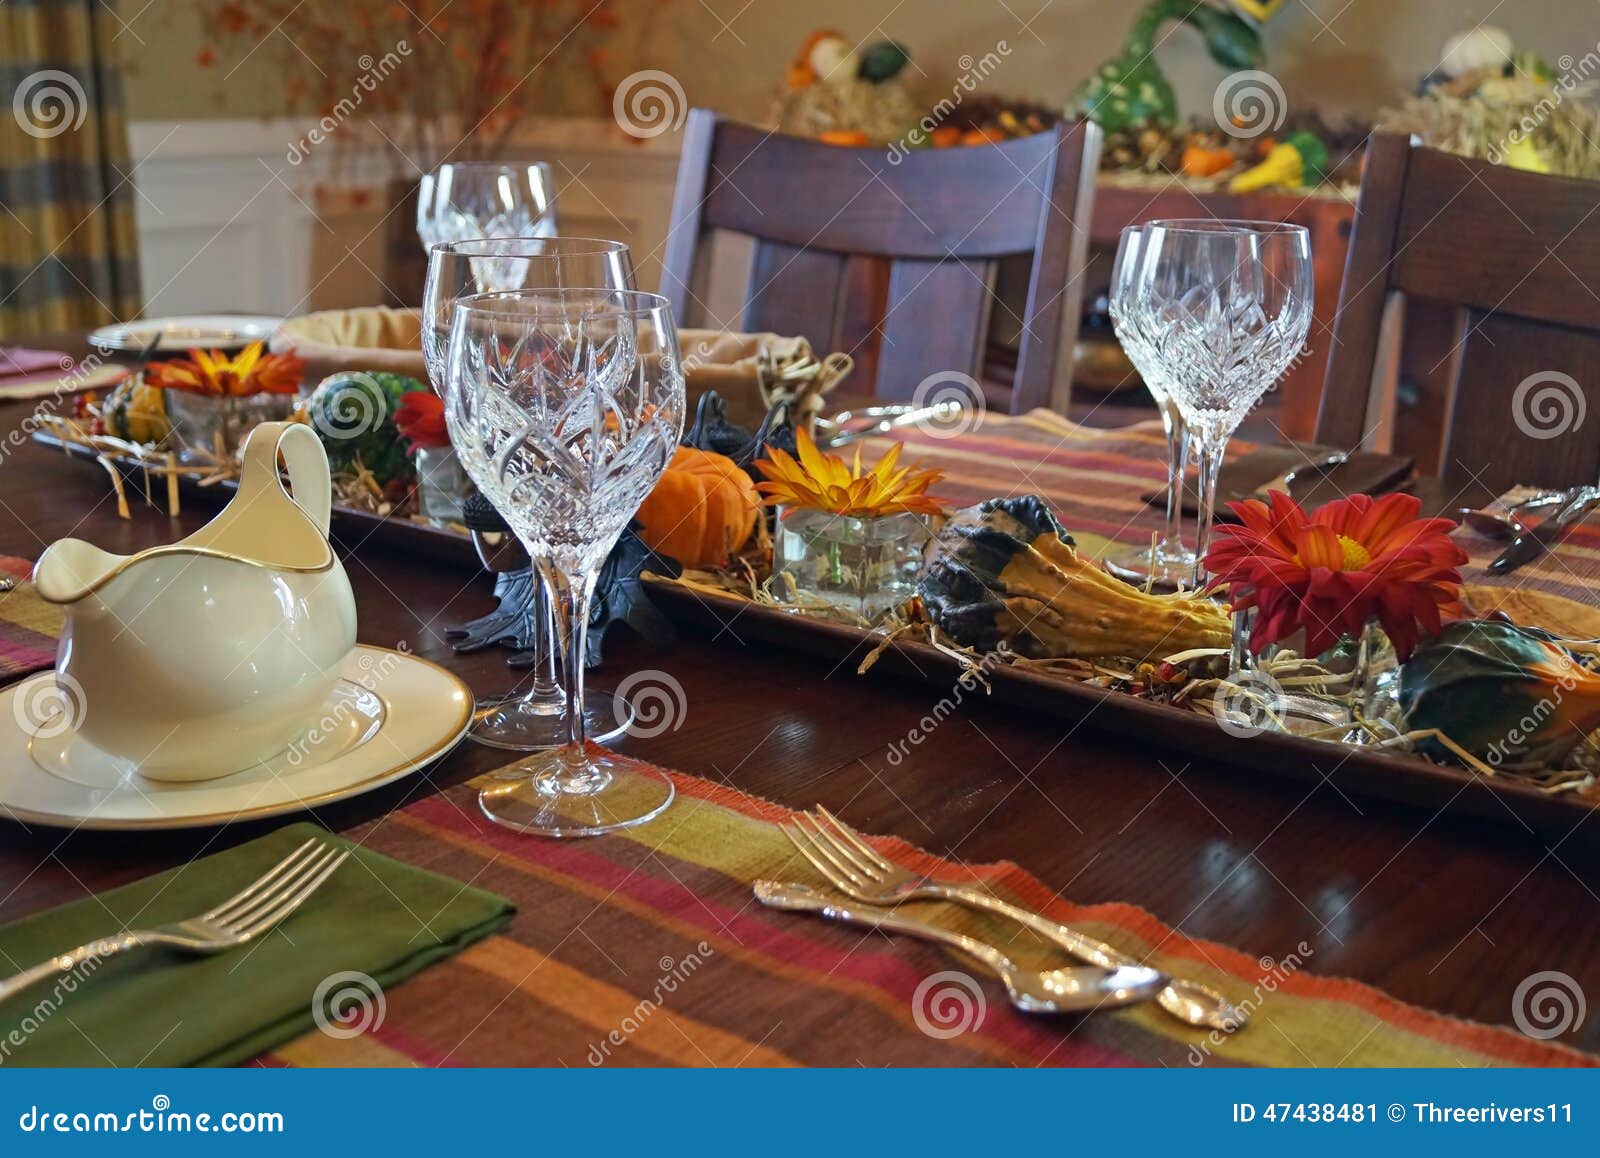 Elegant Thanksgiving Dinner Table Stock Photo - Image: 47438481